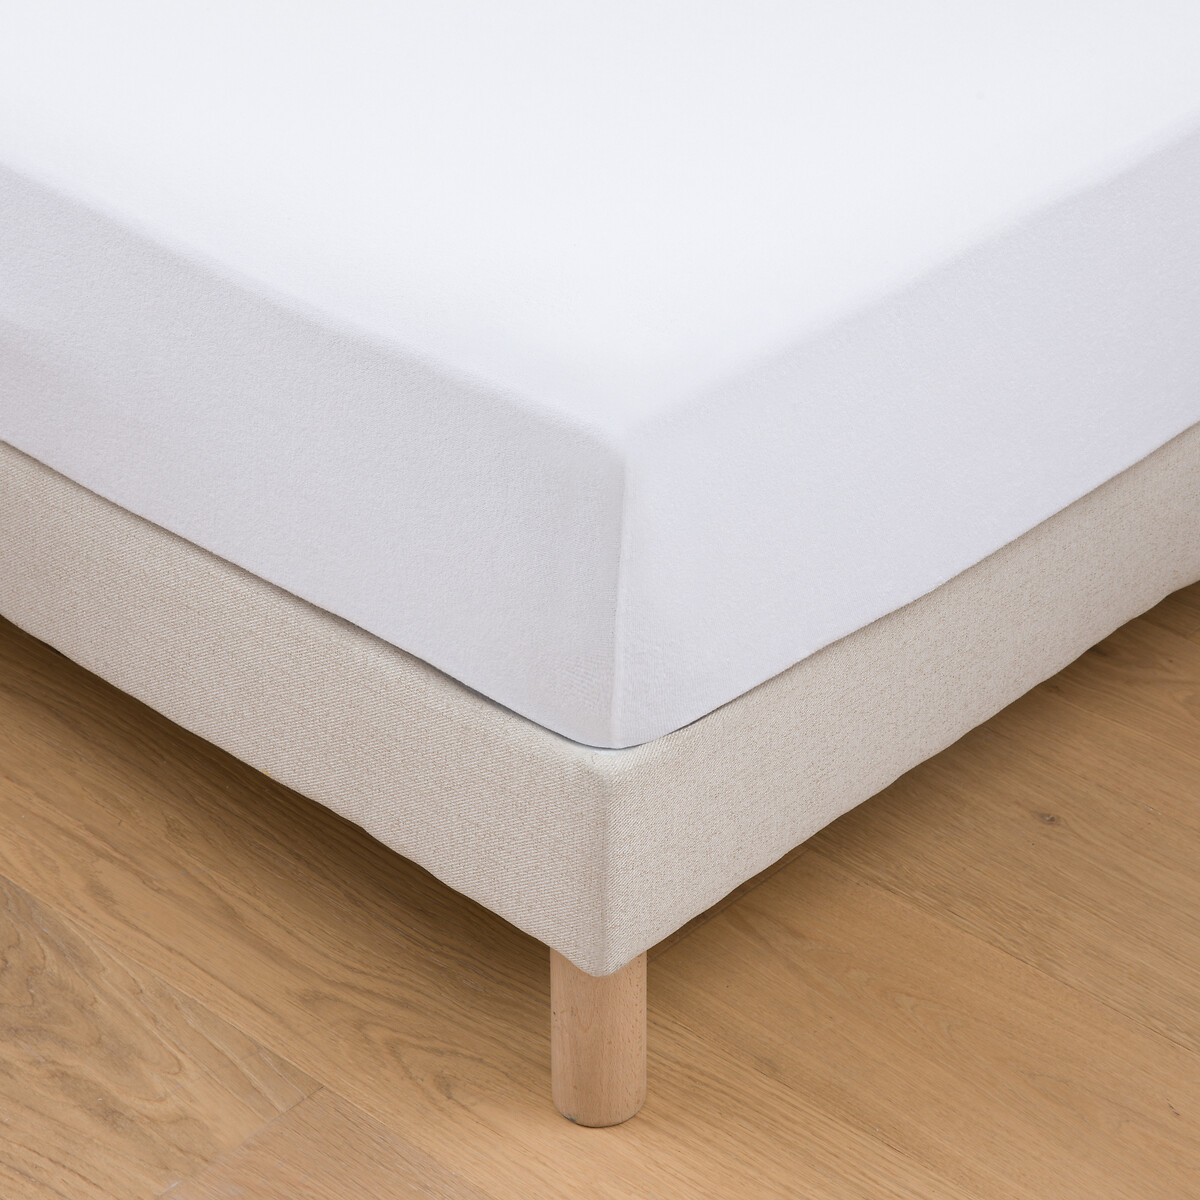 Защитная простыня на матрас из эластичной ткани 90 x 190 см белый простыня для раскладного дивана из махровой ткани и полиуретана 140 x 190 см белый